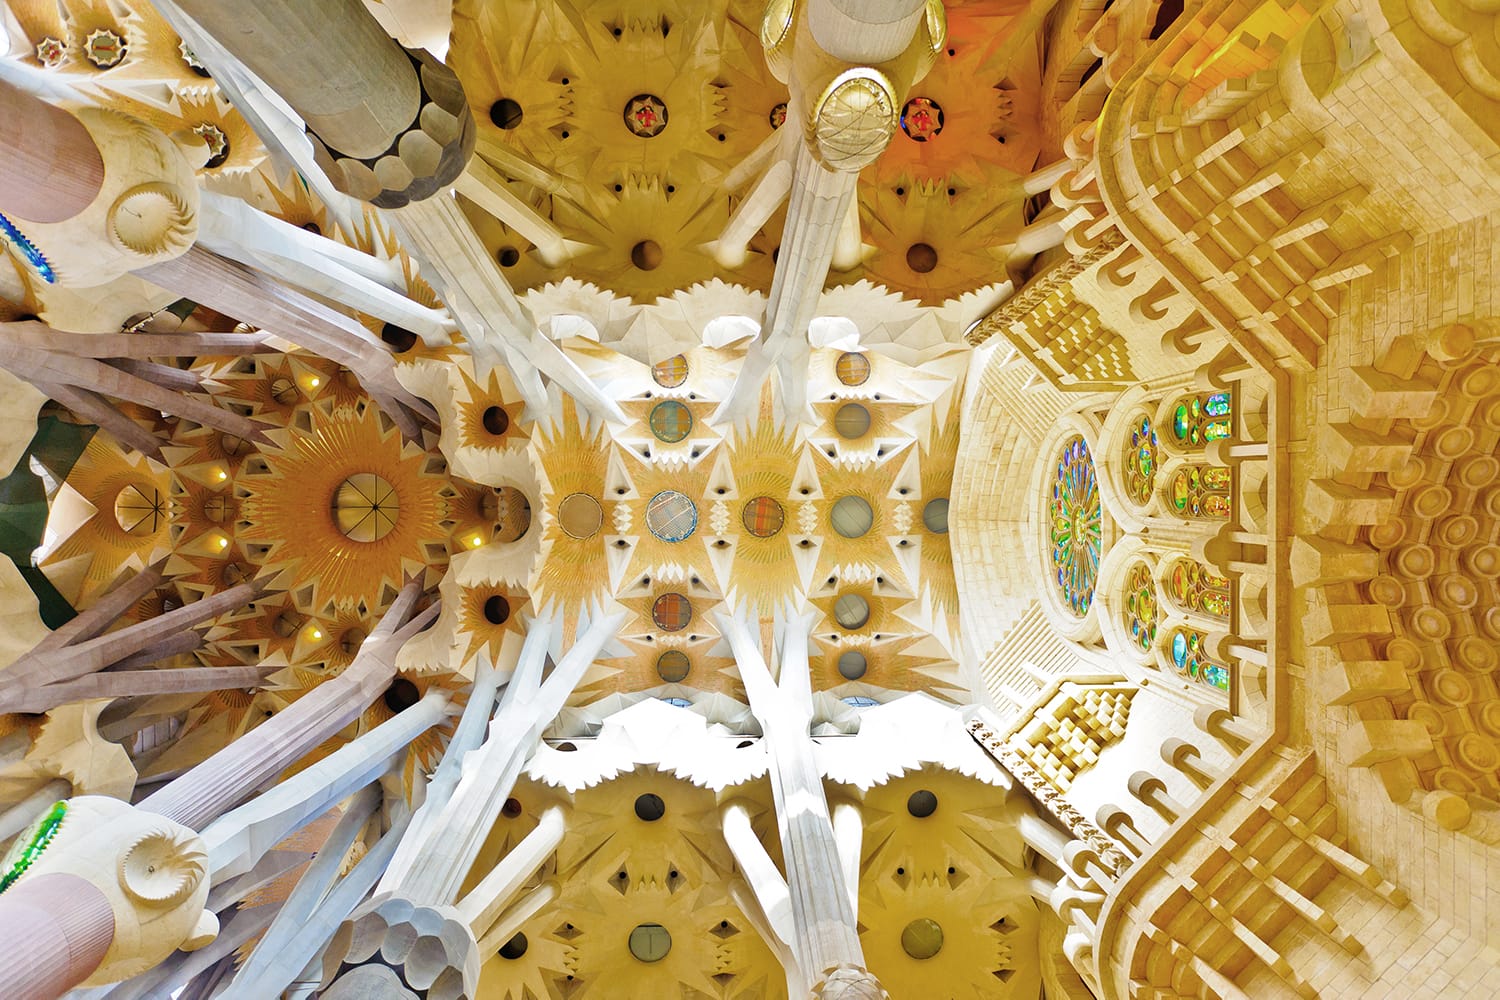 Interior of La Sagrada Familia in Barcelona, Spain